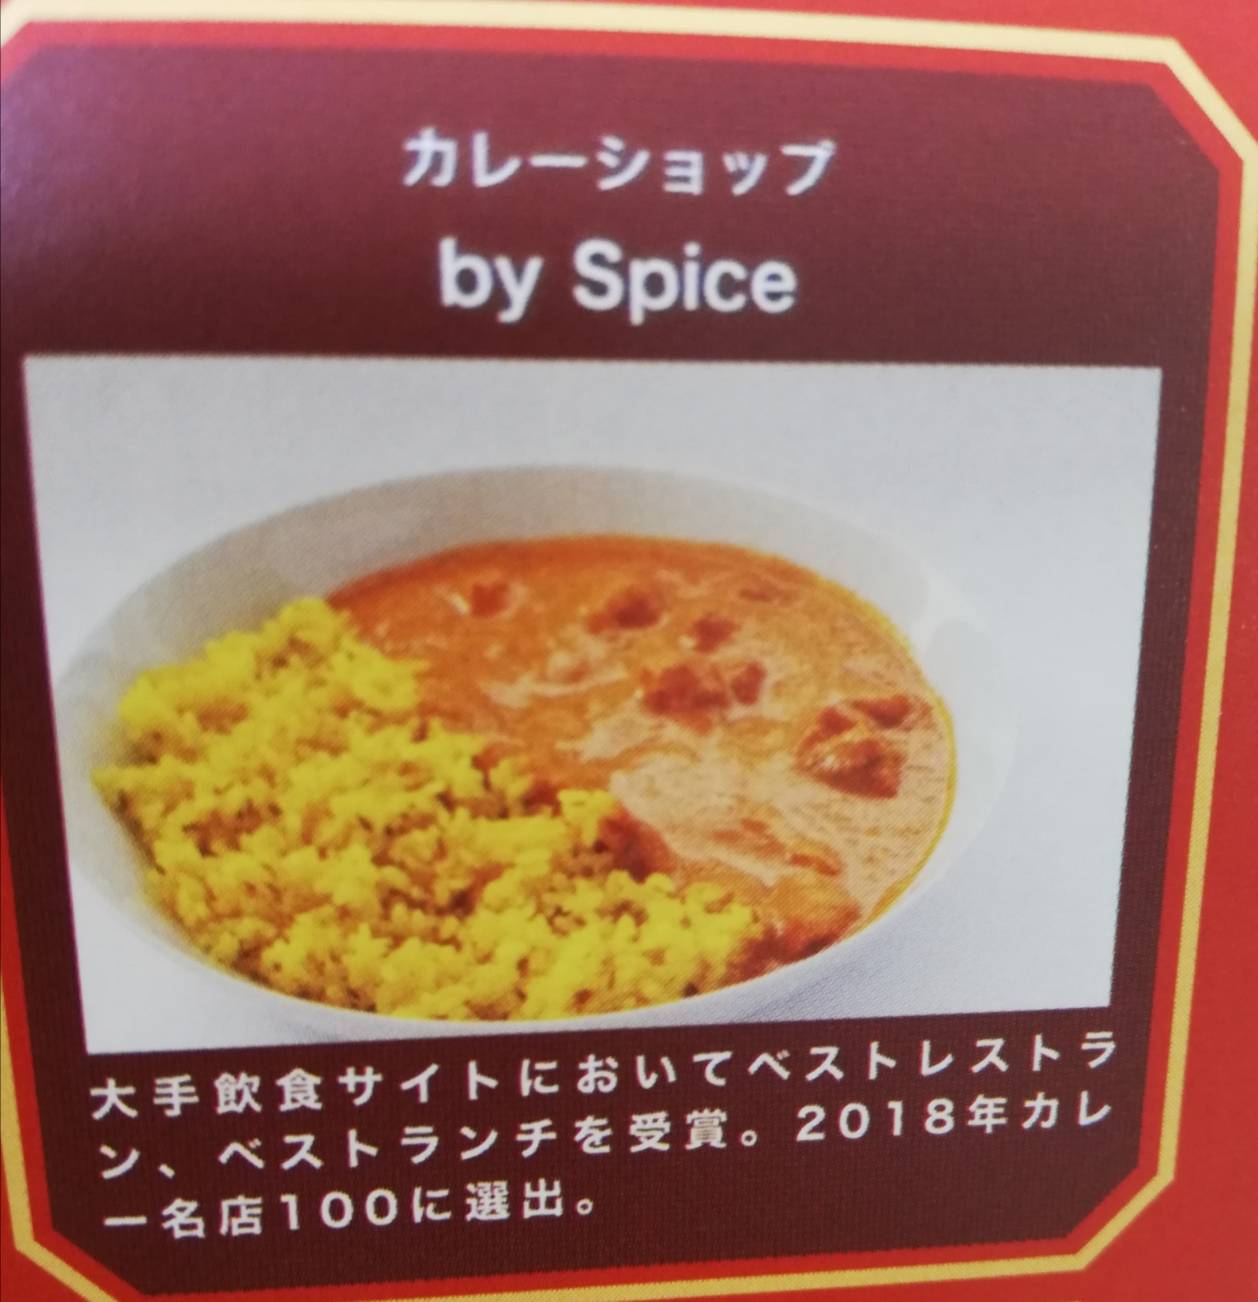 by Spiceカレーキテミテマツド閉店